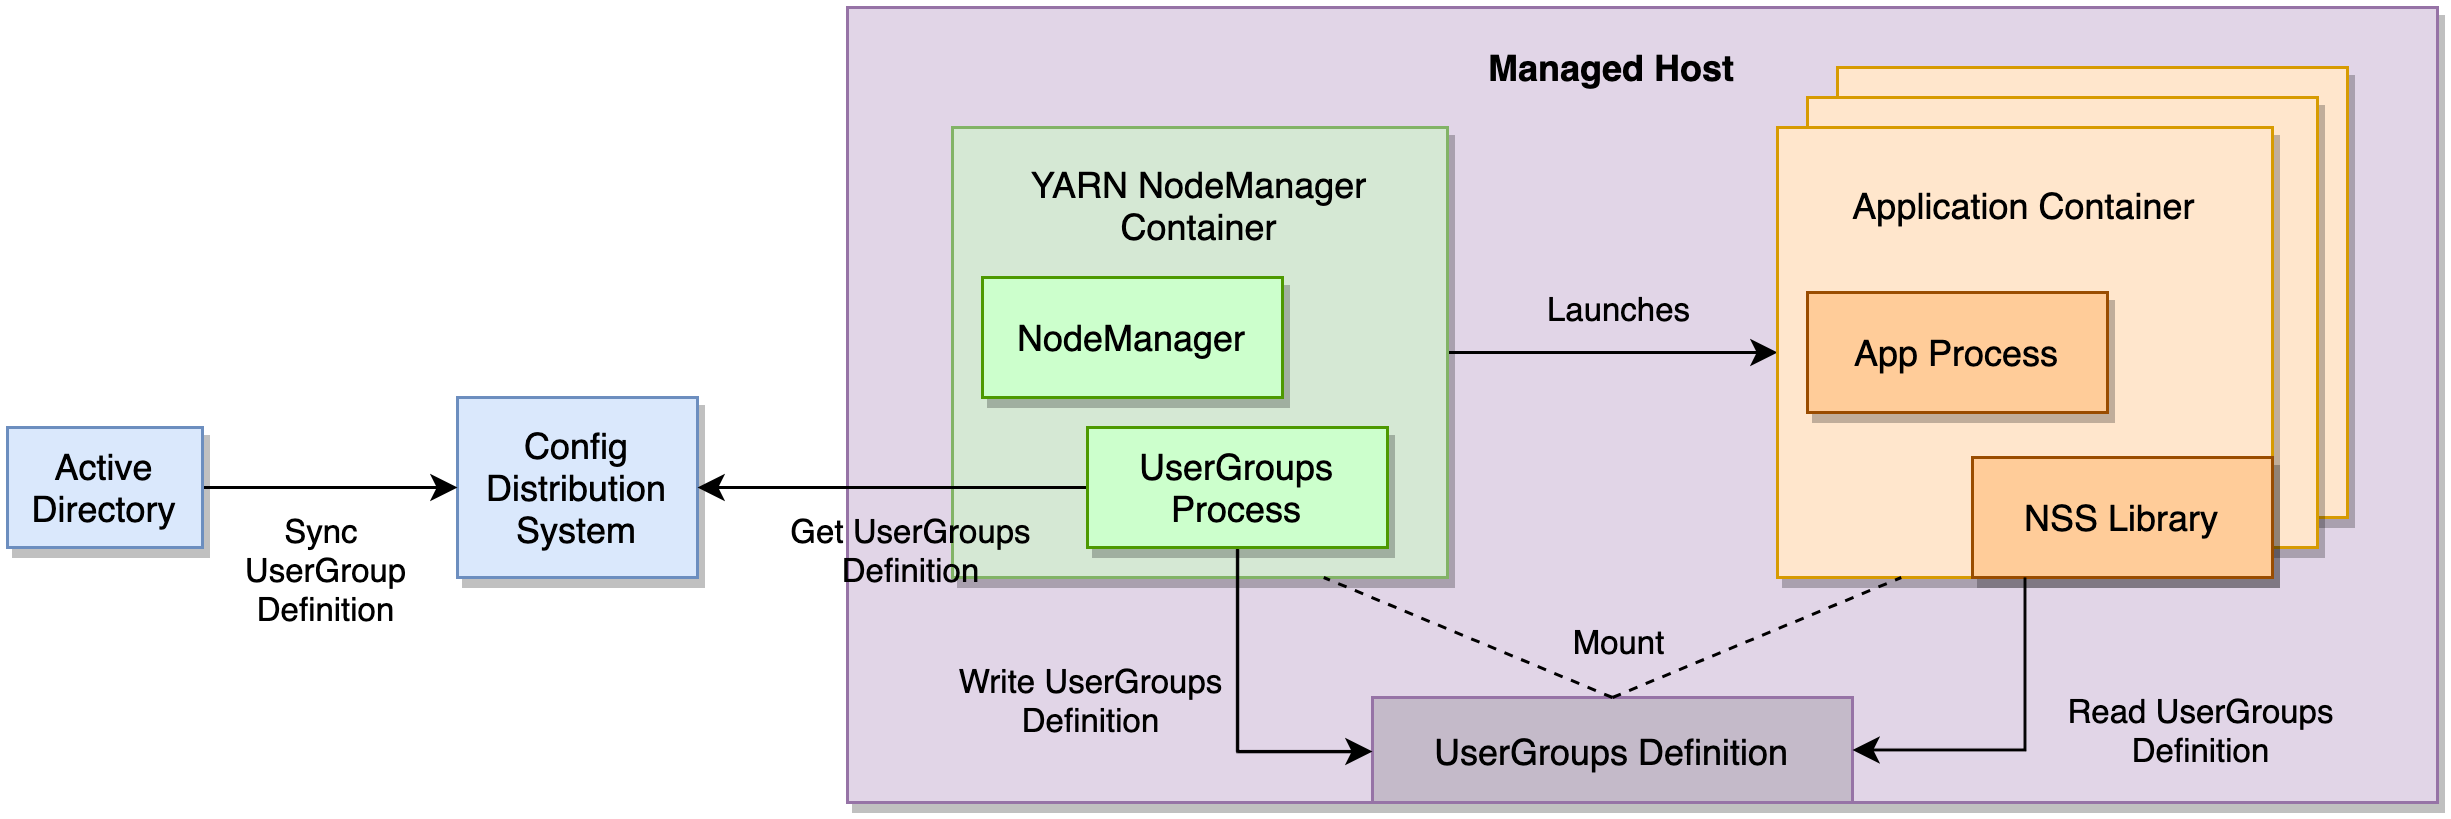 Apache Hadoop 基础设施容器化在 Uber 的实践_Hadoop_04